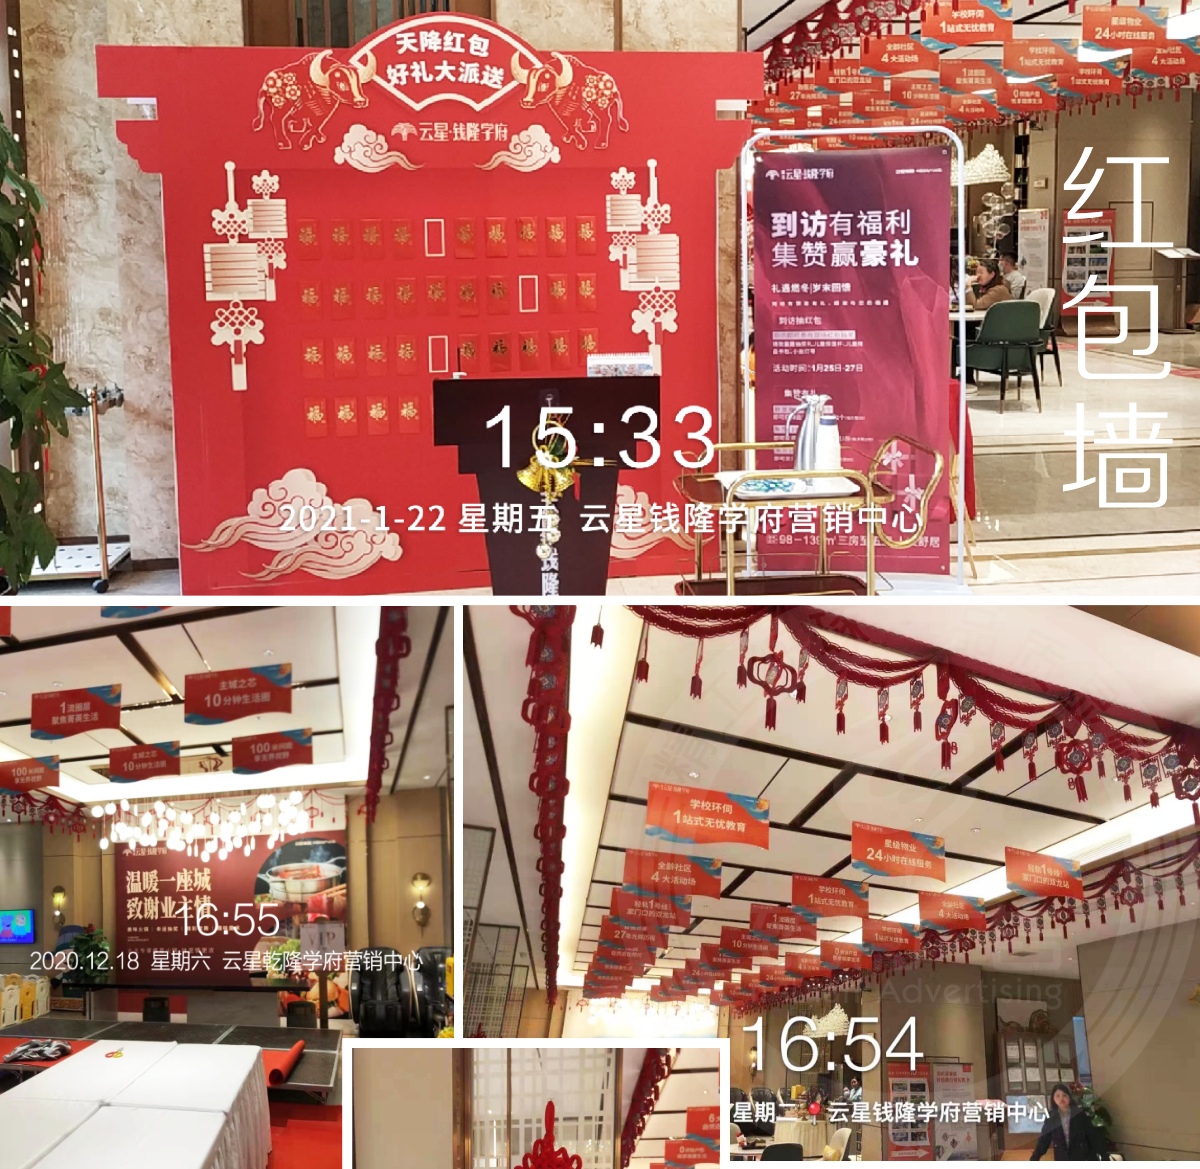 柳州云星錢隆學府營銷中心廣告策劃設計制作紅包墻,造型拱門,新春活動包裝_02.png